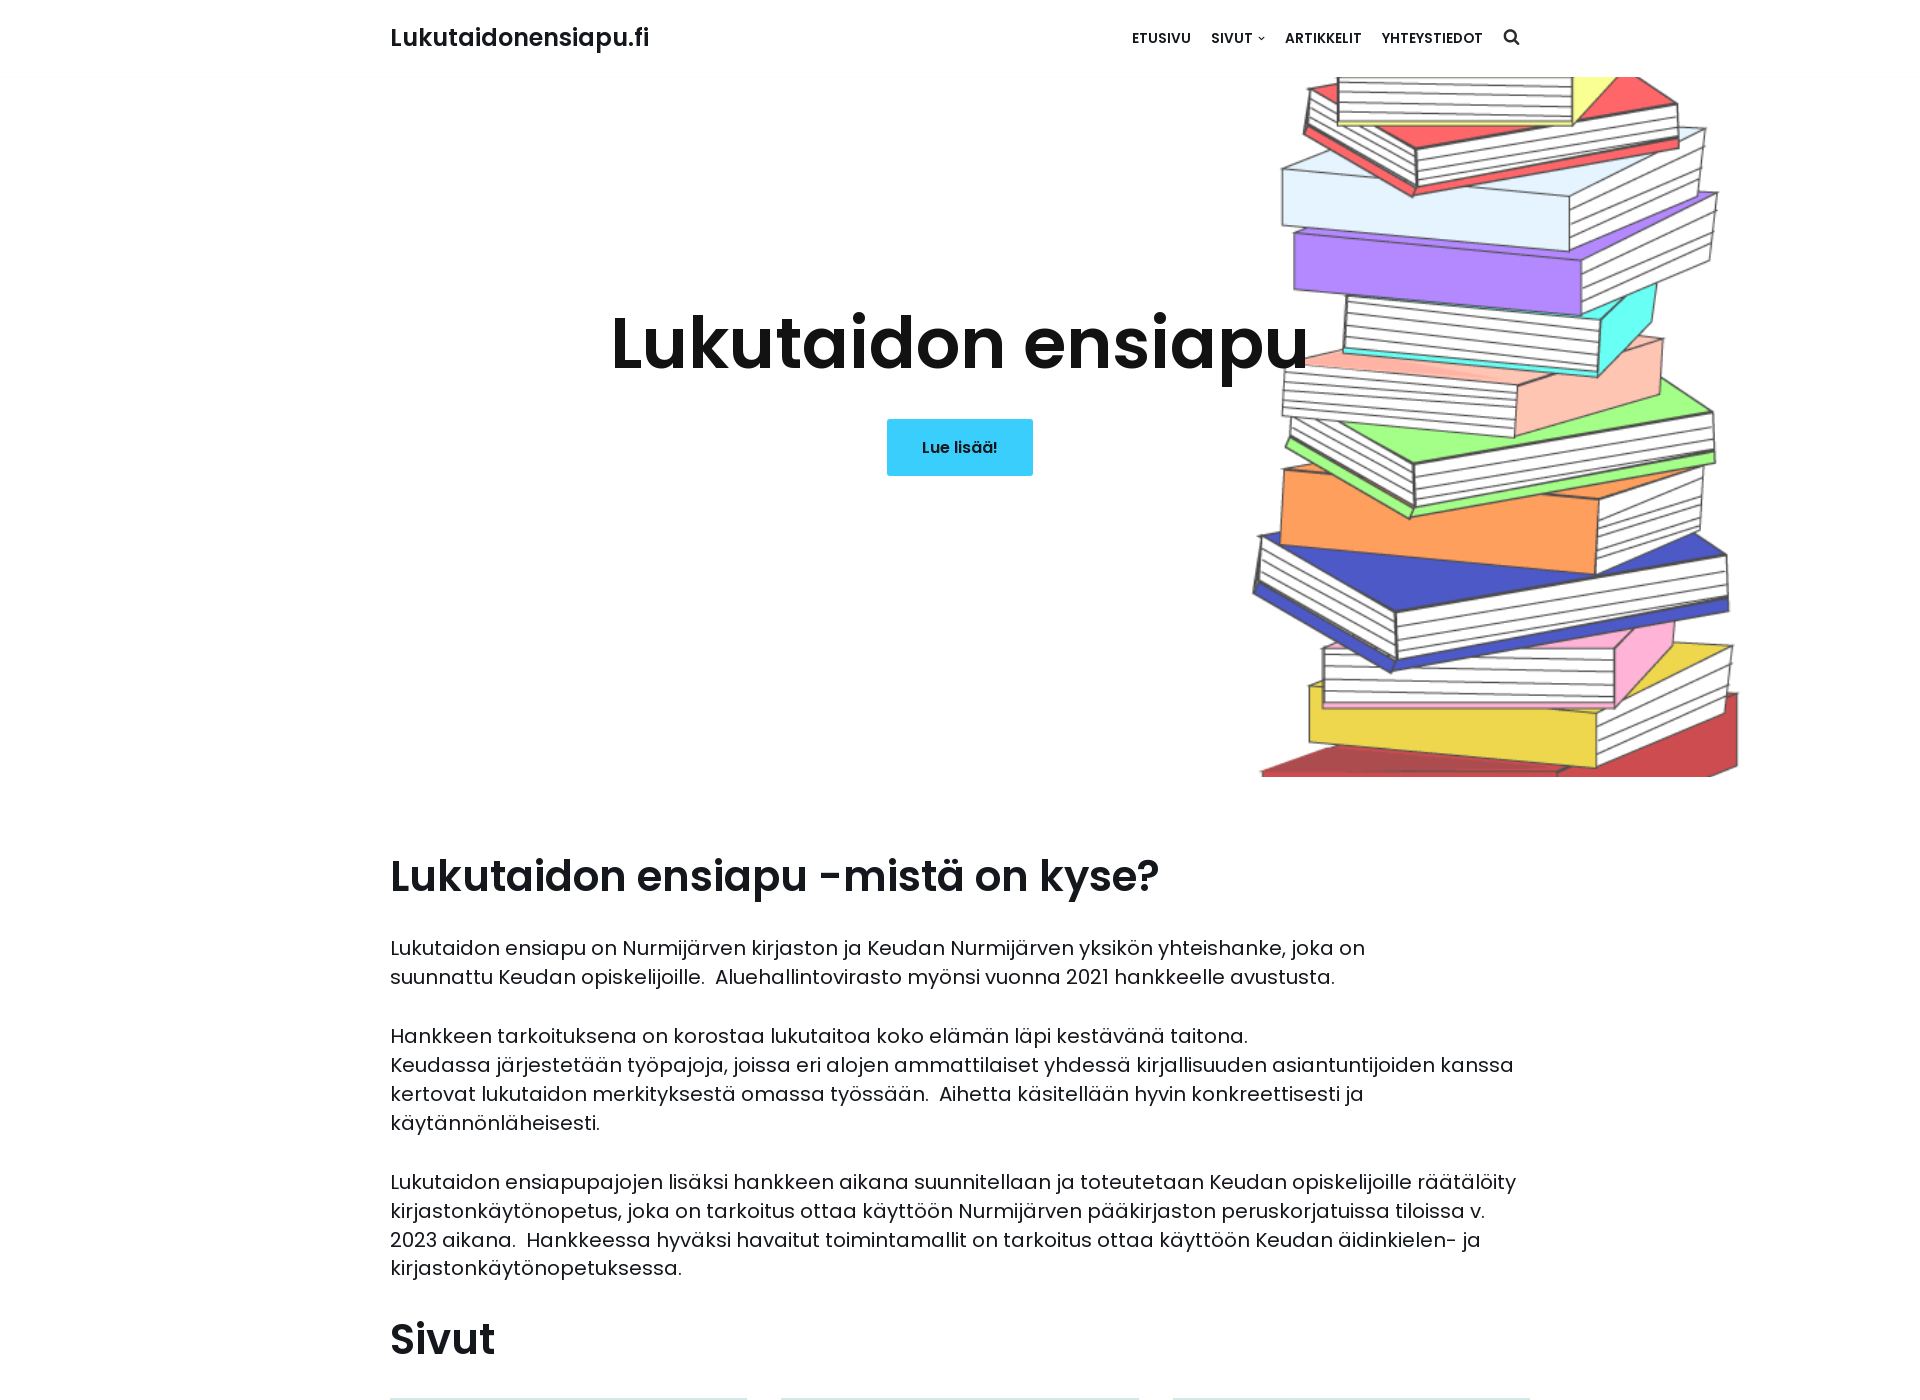 Näyttökuva lukutaidonensiapu.fi